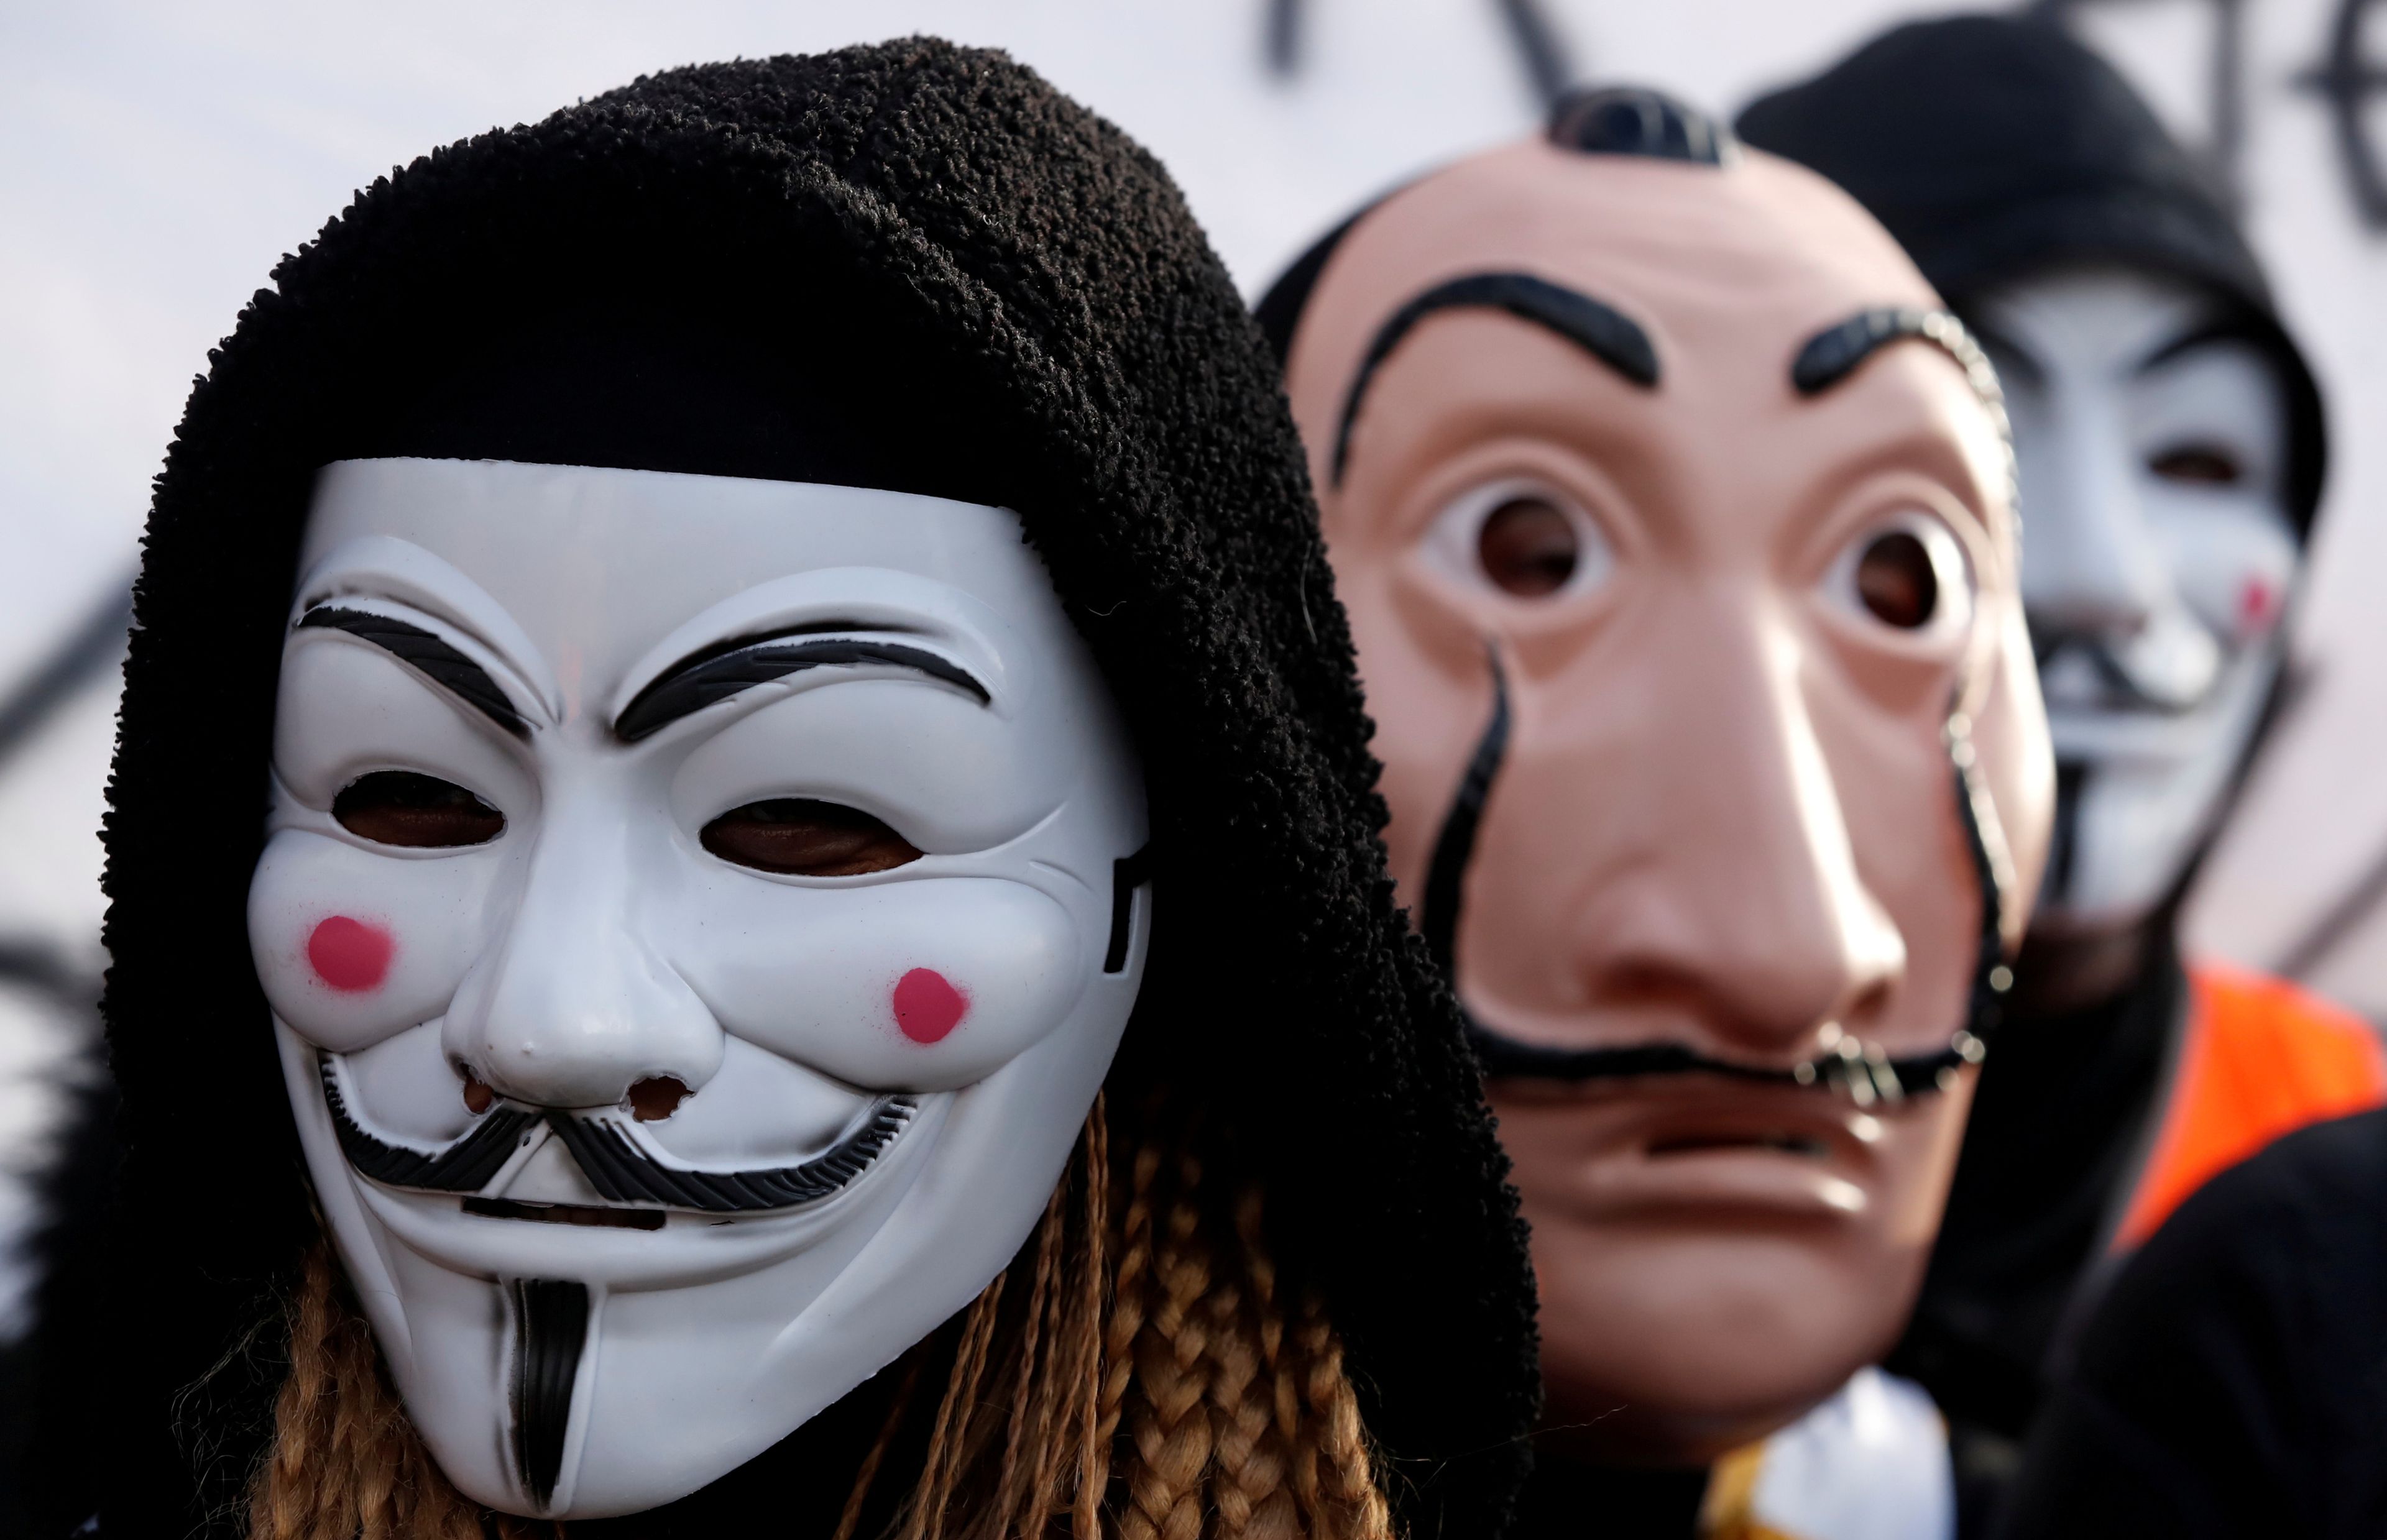 Manifestantes con máscaras de Guy Fawkes o Dalí, en referencia a V de Vendetta o La Casa de Papel.